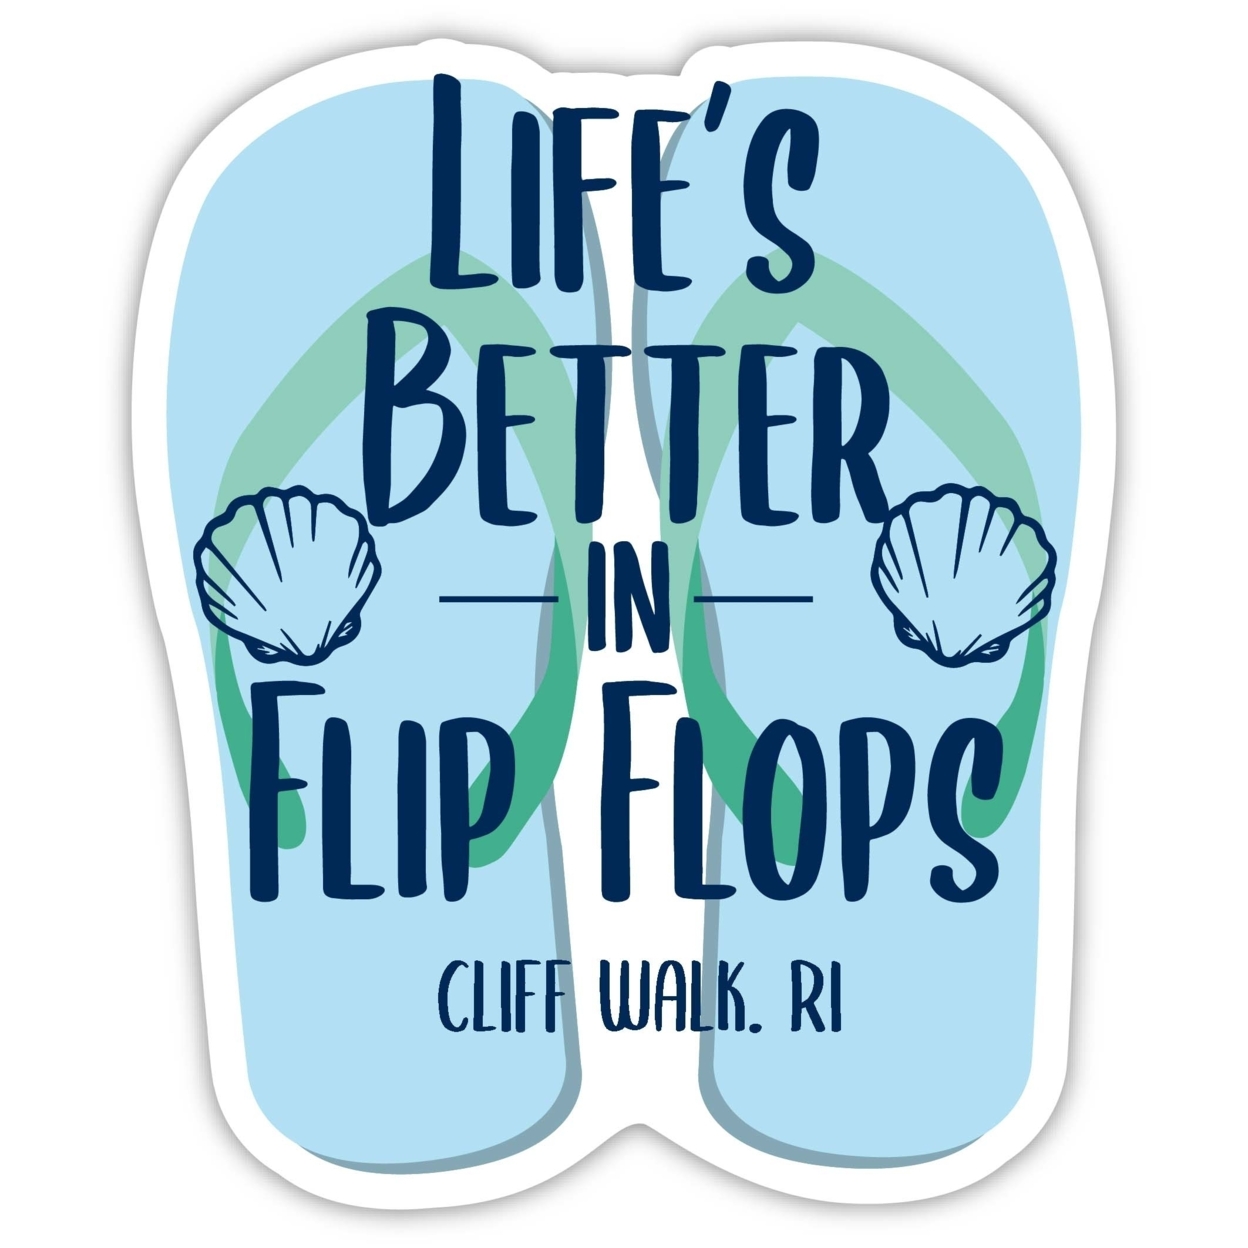 Cliff Walk Rhode Island Souvenir 4 Inch Vinyl Decal Sticker Flip Flop Design